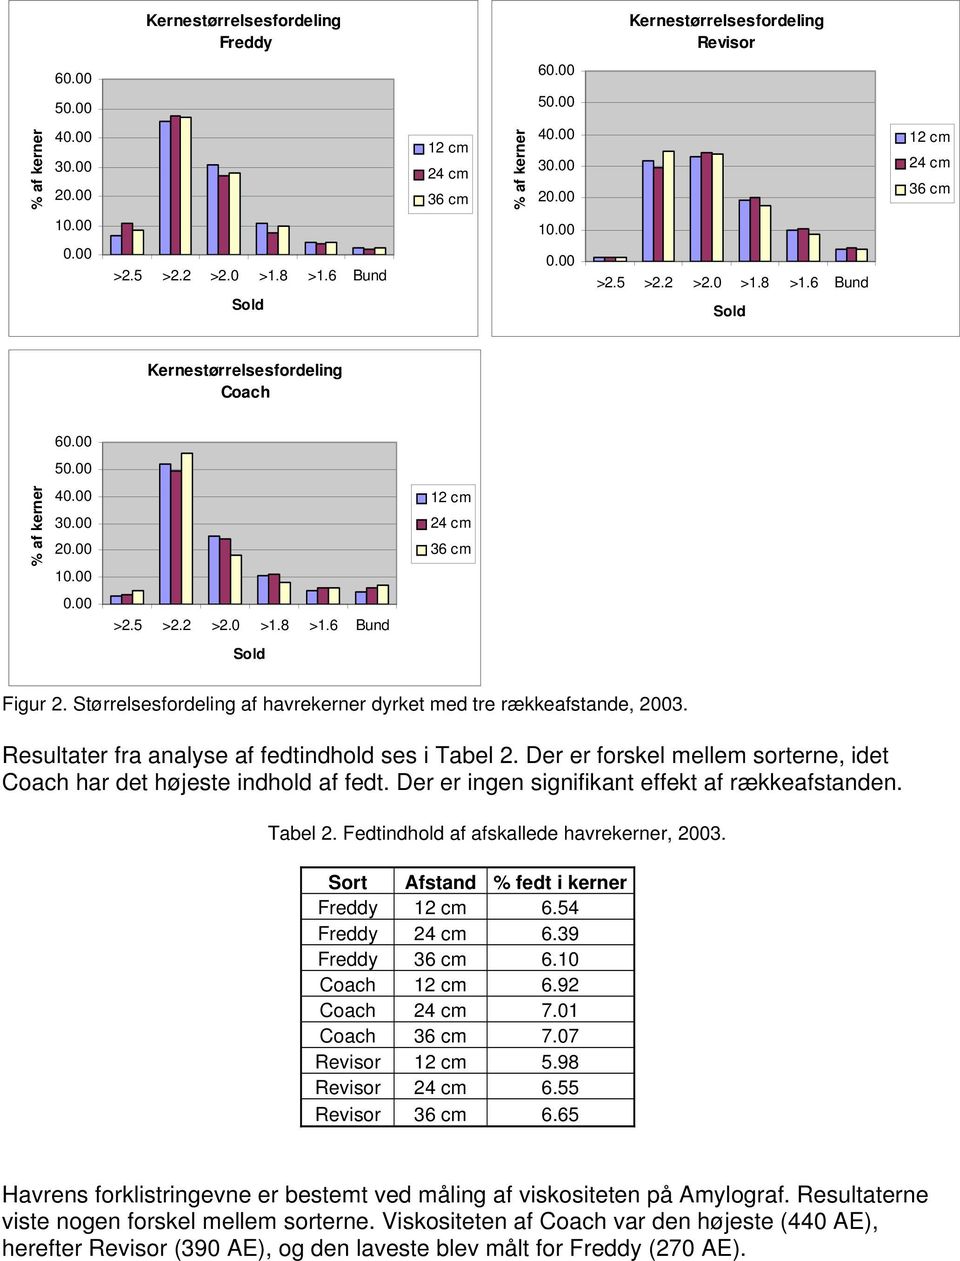 Størrelsesfordeling af havrekerner dyrket med tre rækkeafstande, 2003. Resultater fra analyse af fedtindhold ses i Tabel 2. Der er forskel mellem sorterne, idet Coach har det højeste indhold af fedt.